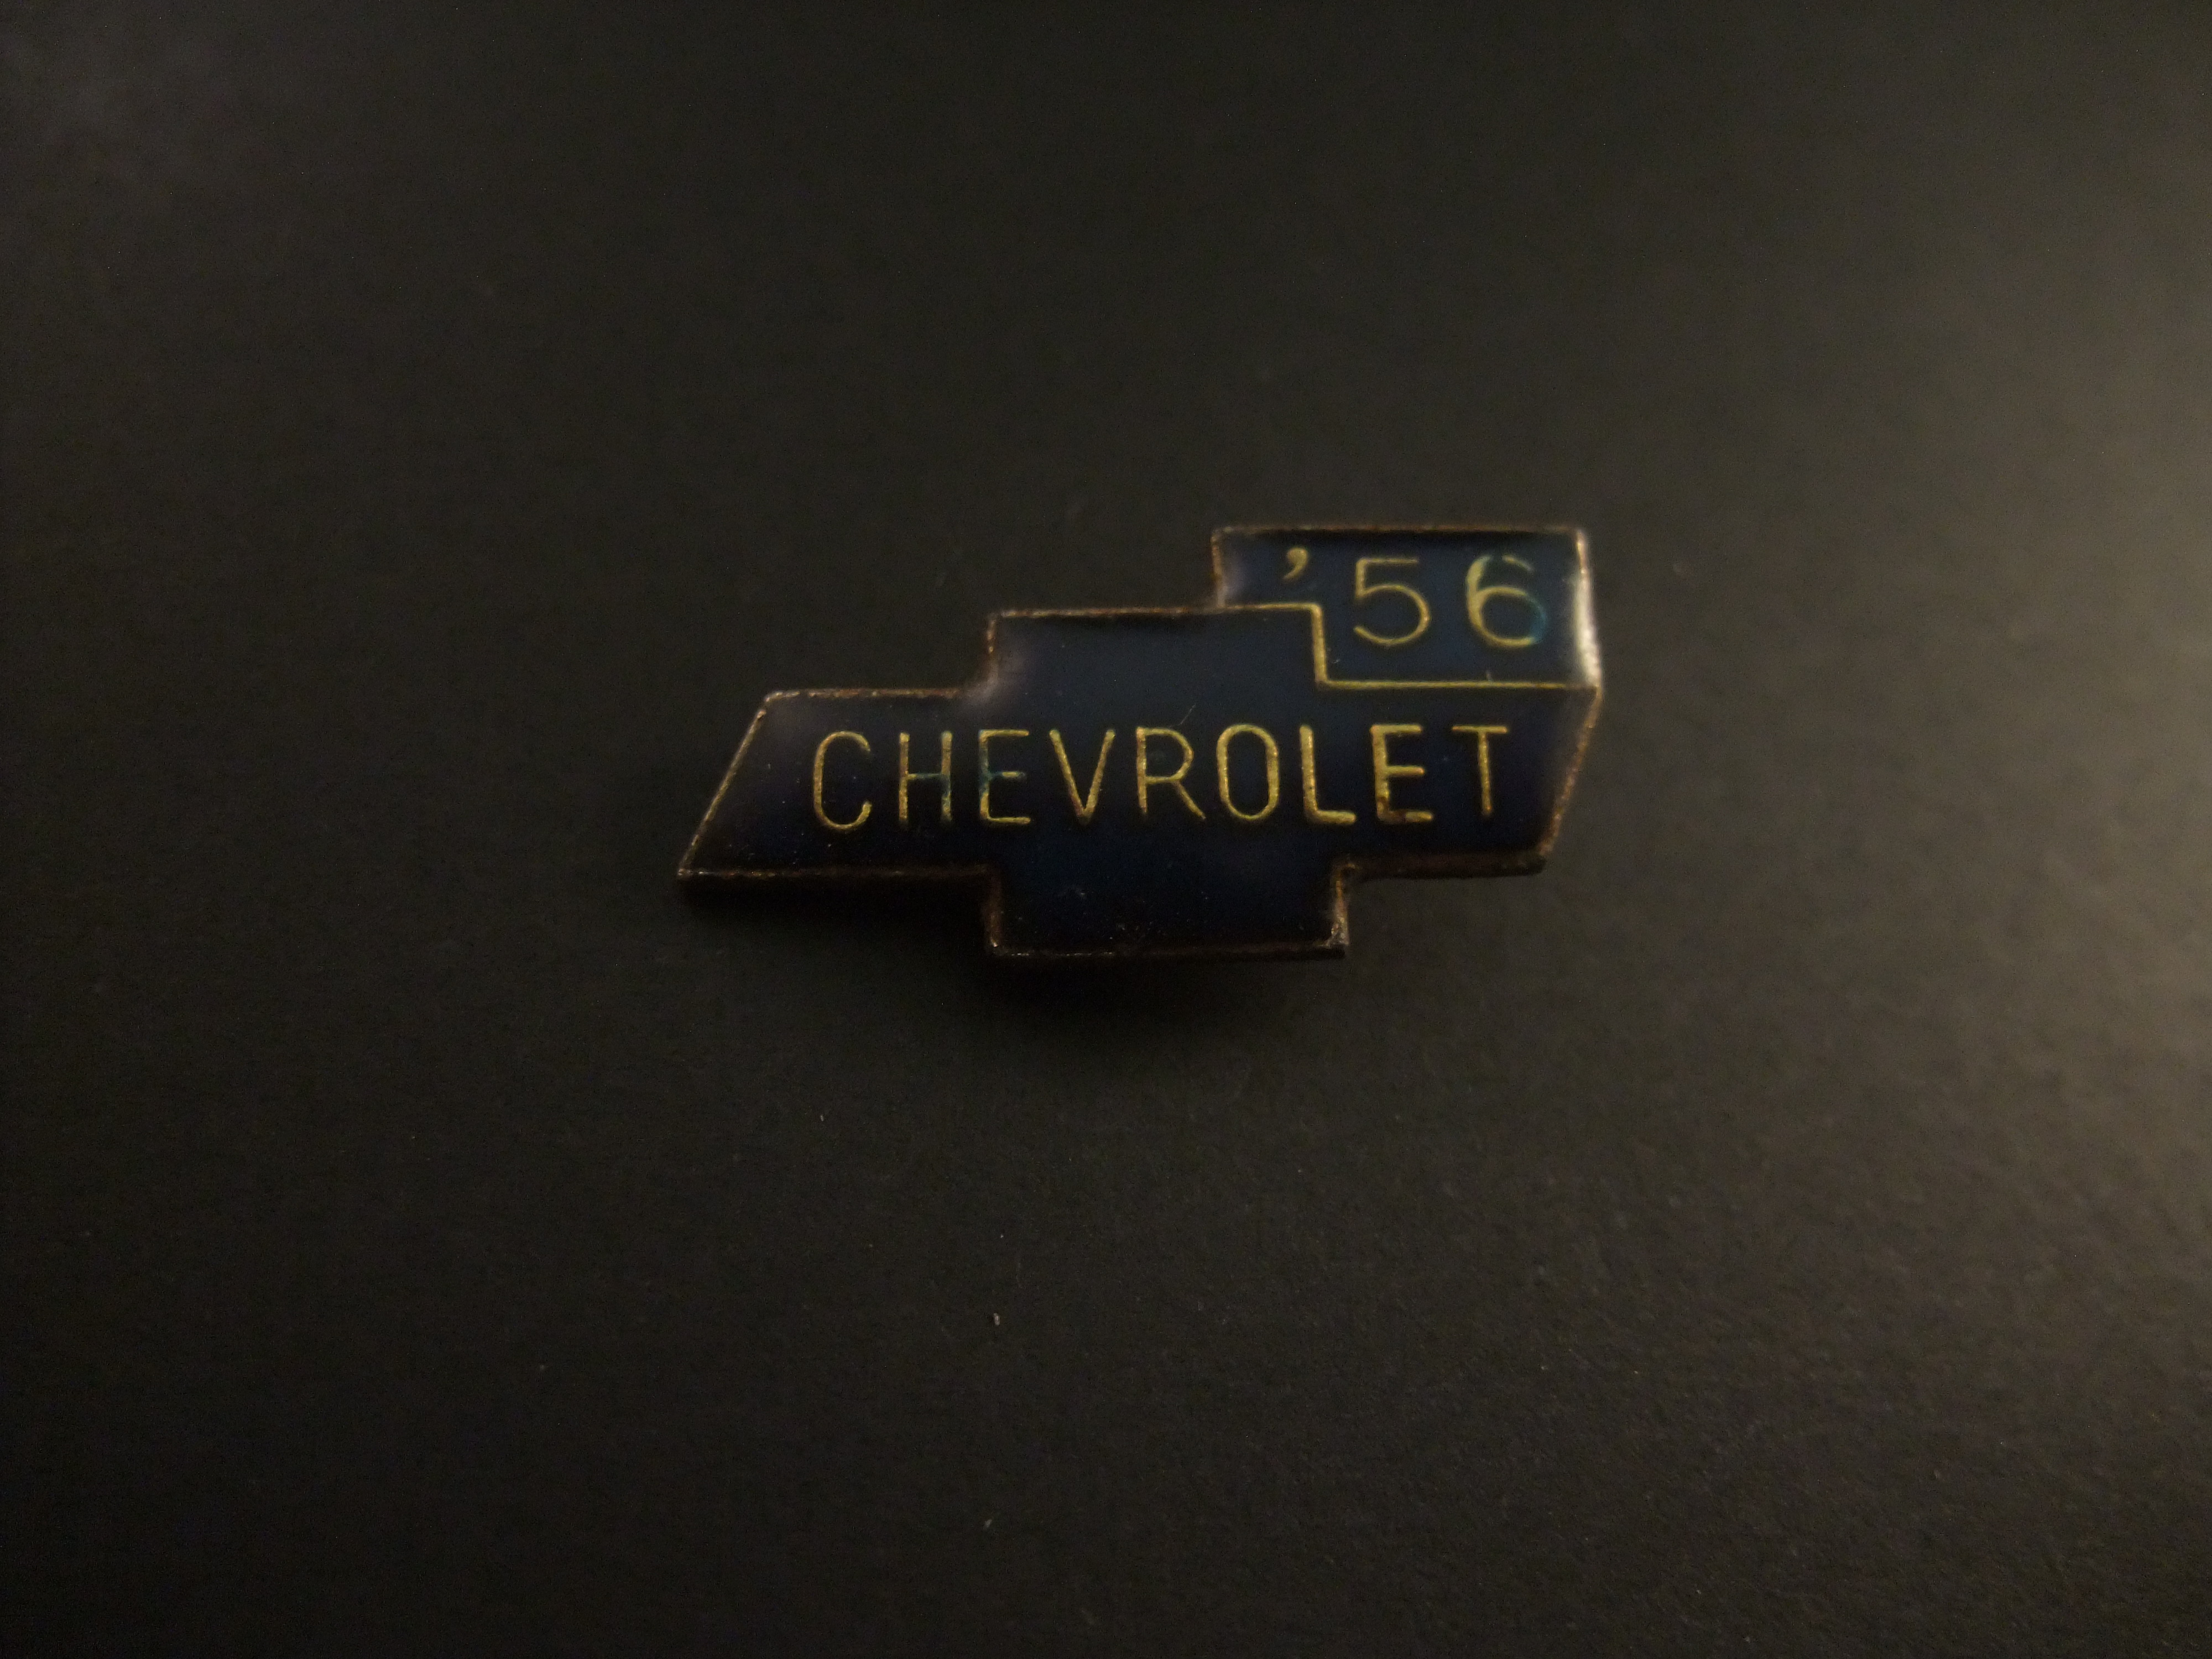 Chevrolet 1956 logo